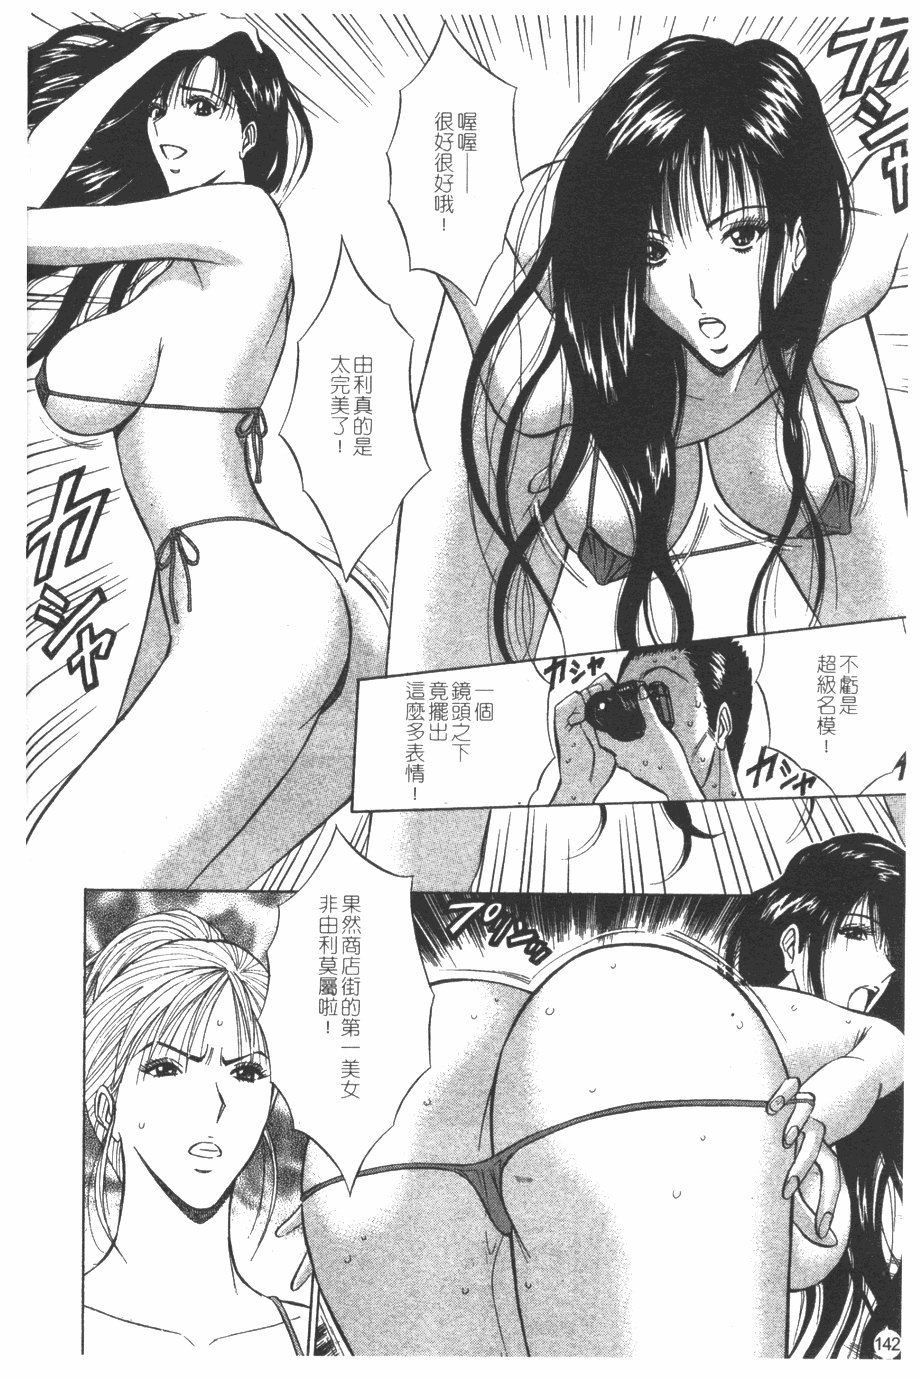 [Nagashima Chosuke] Sakuradoori no Megami - The Venus of SAKURA St. 1 [Chinese] 142